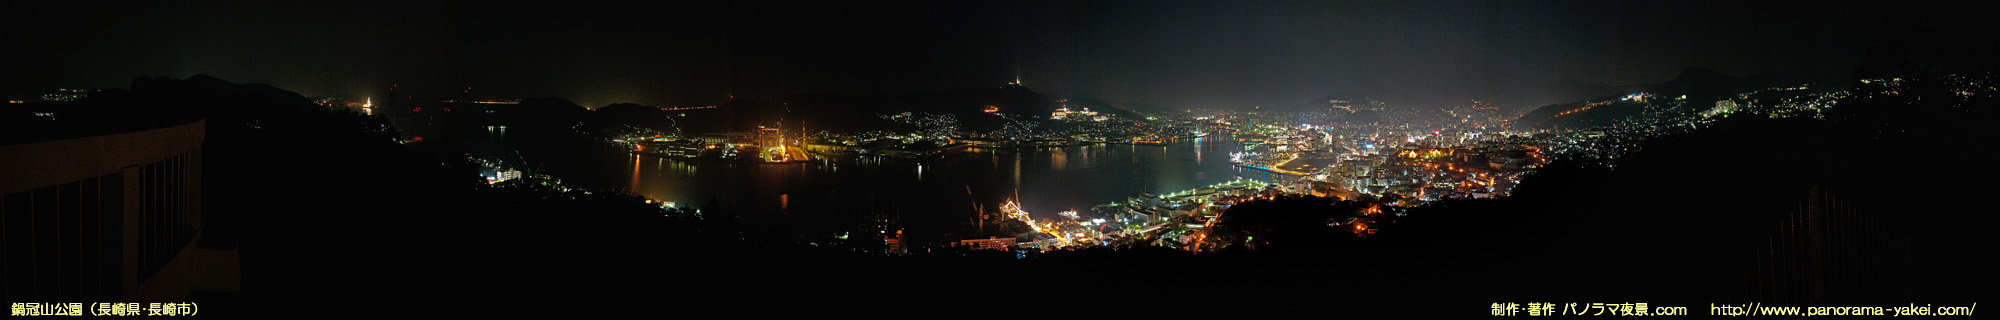 鍋冠山公園展望台からのパノラマ夜景写真